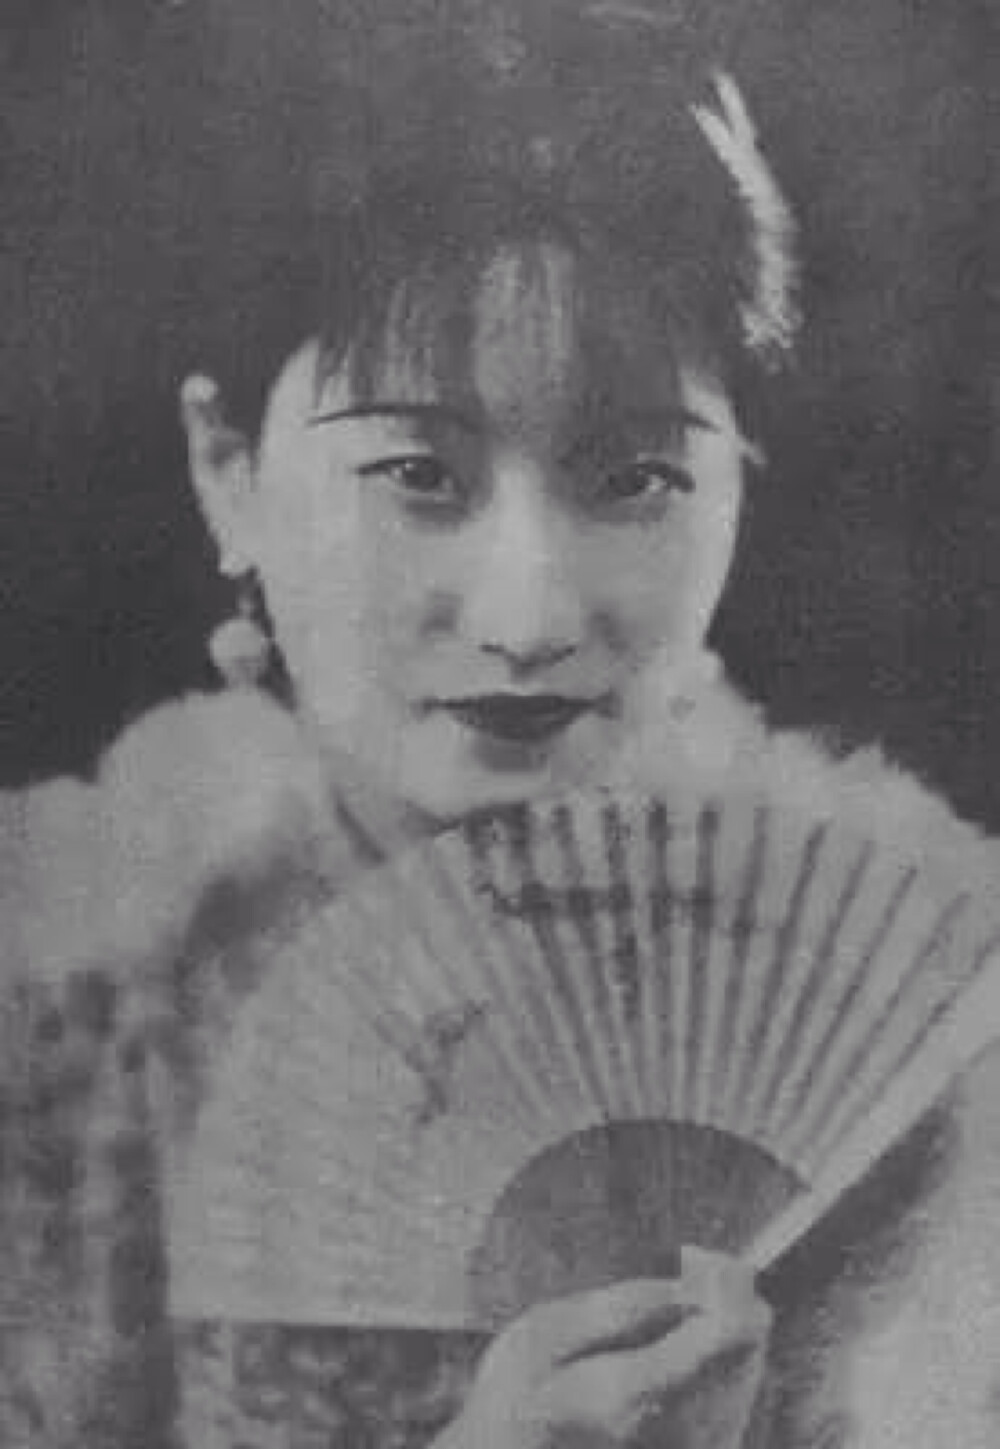 陆小曼（1903-1965），民国名媛。这个人不太熟悉，知道她是徐志摩的老婆。还是个画家，师从刘海栗、陈半丁、贺天健等名家，算是名流；父亲陆定原是财政部的赋税司司长，算是高干。她18岁时，逐渐名闻北京社交界。是一位出色的沙龙女主人。